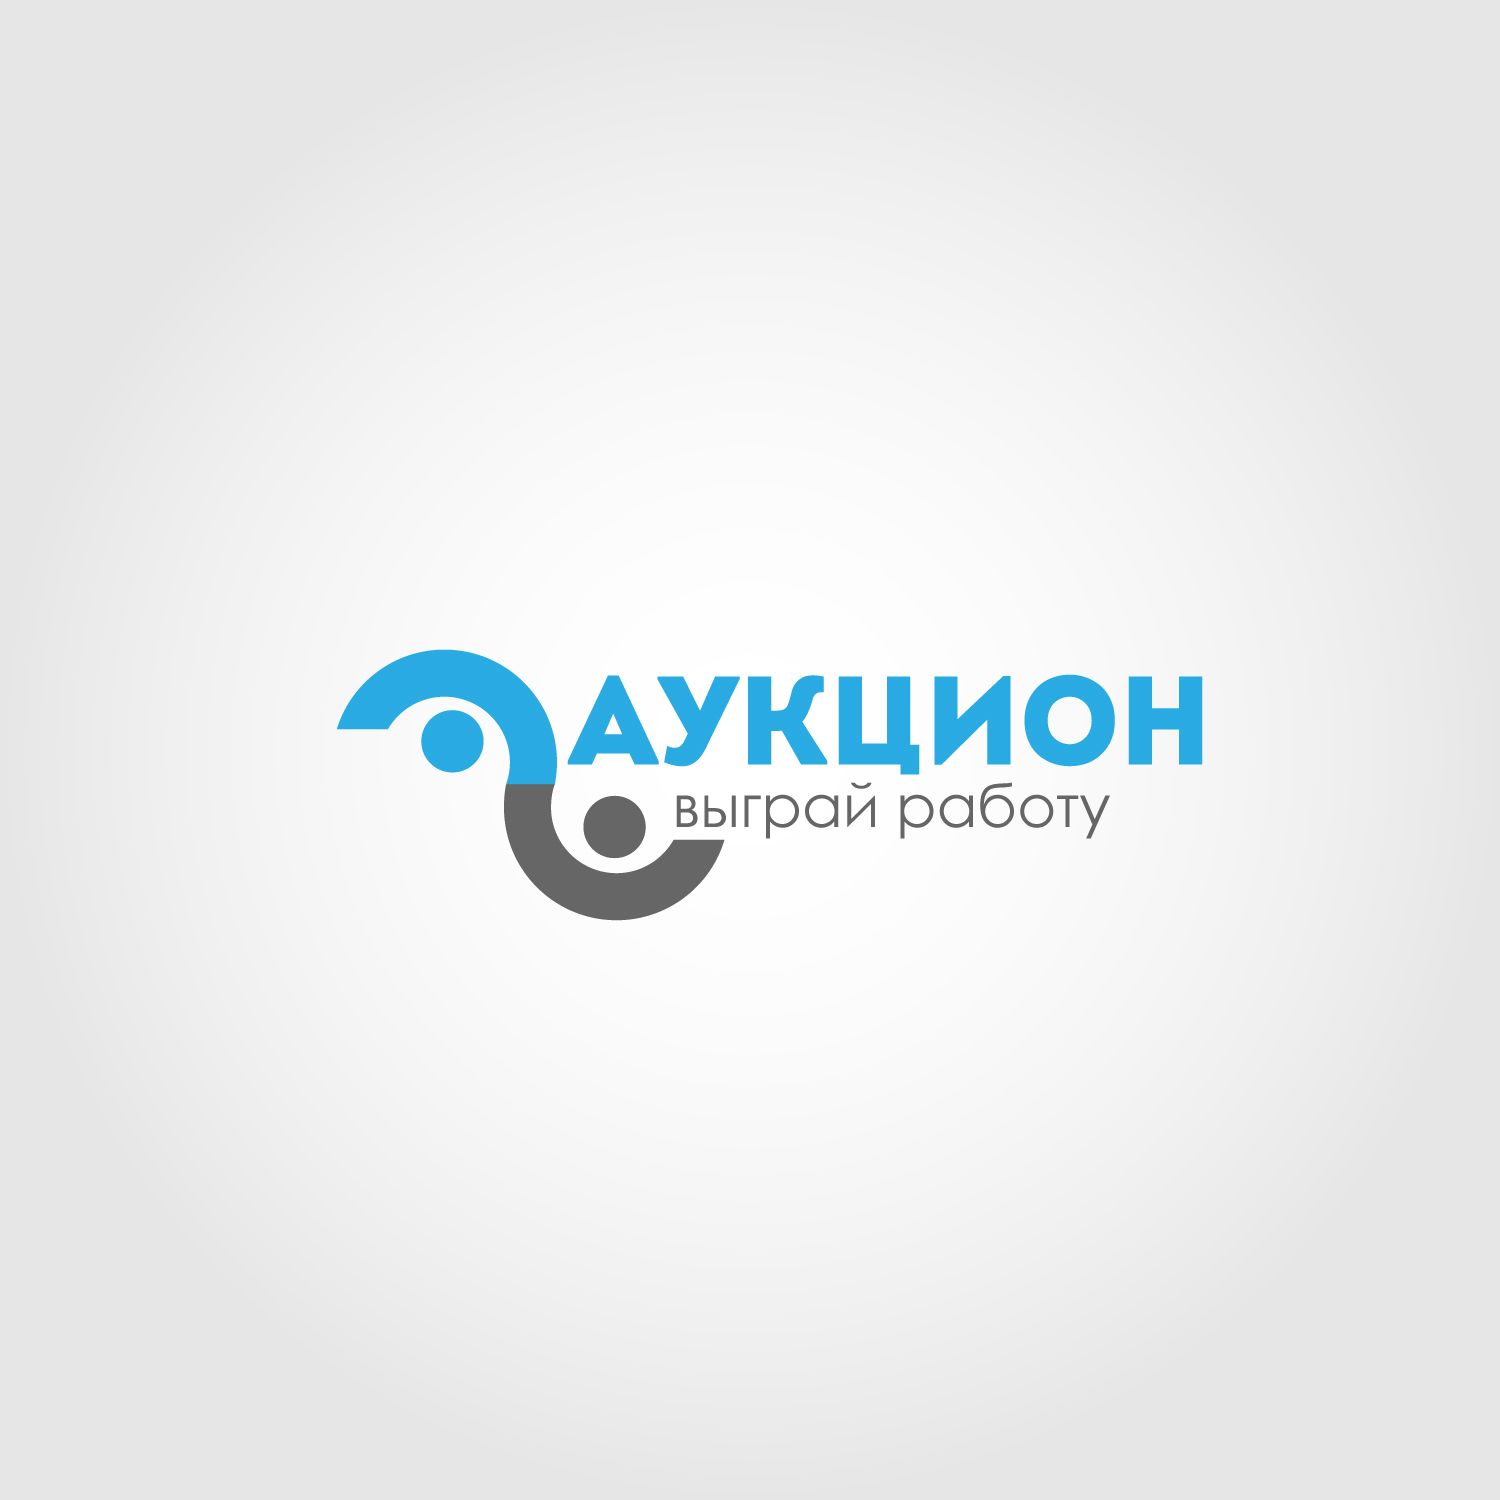 Логотип для Аукцио - дизайнер Radost-vi